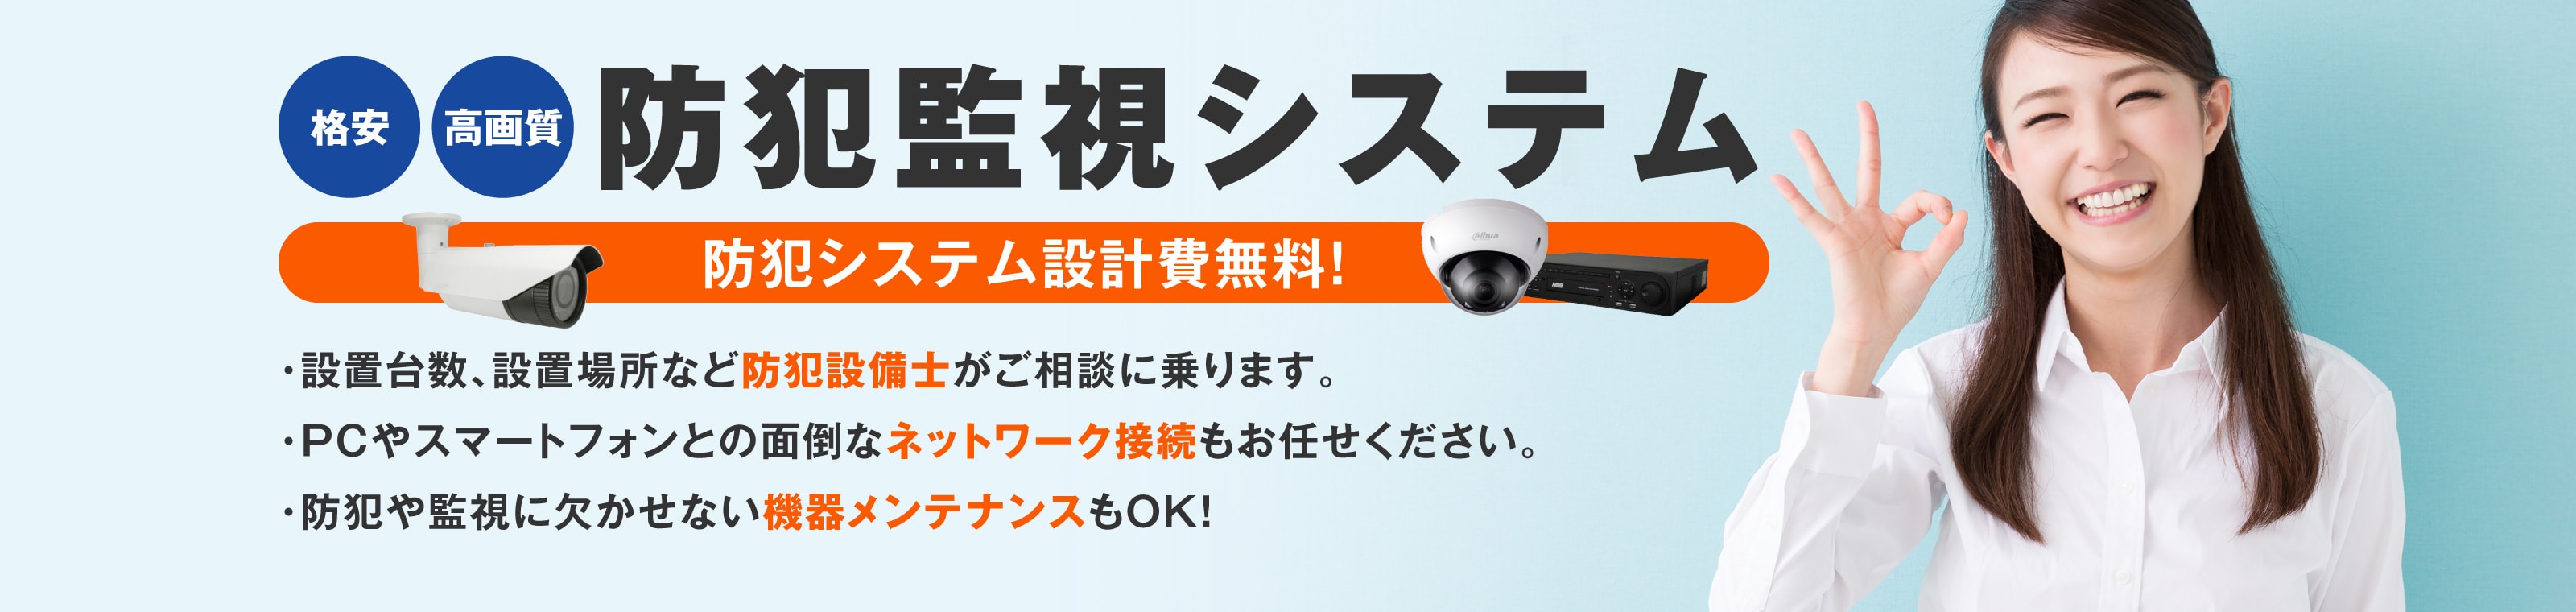 防犯・監視カメラシステムは大阪の防犯カメラ本舗